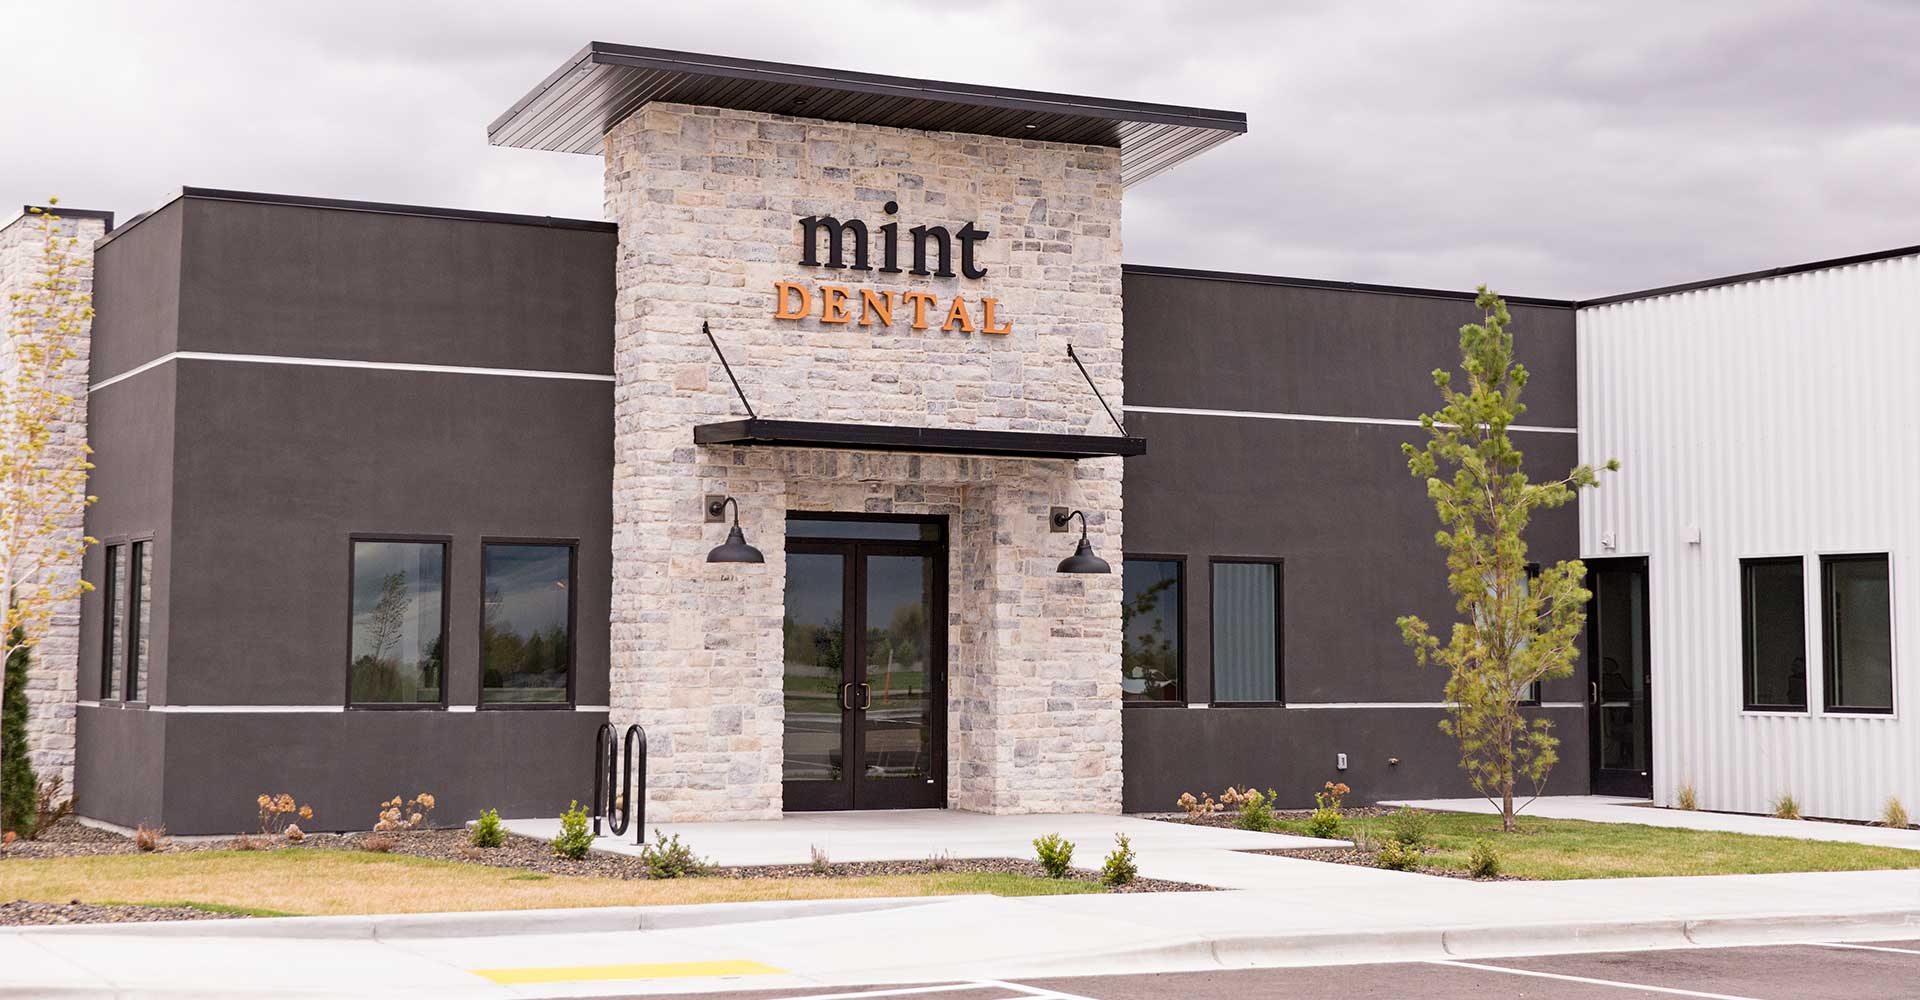 Mint dental entrance